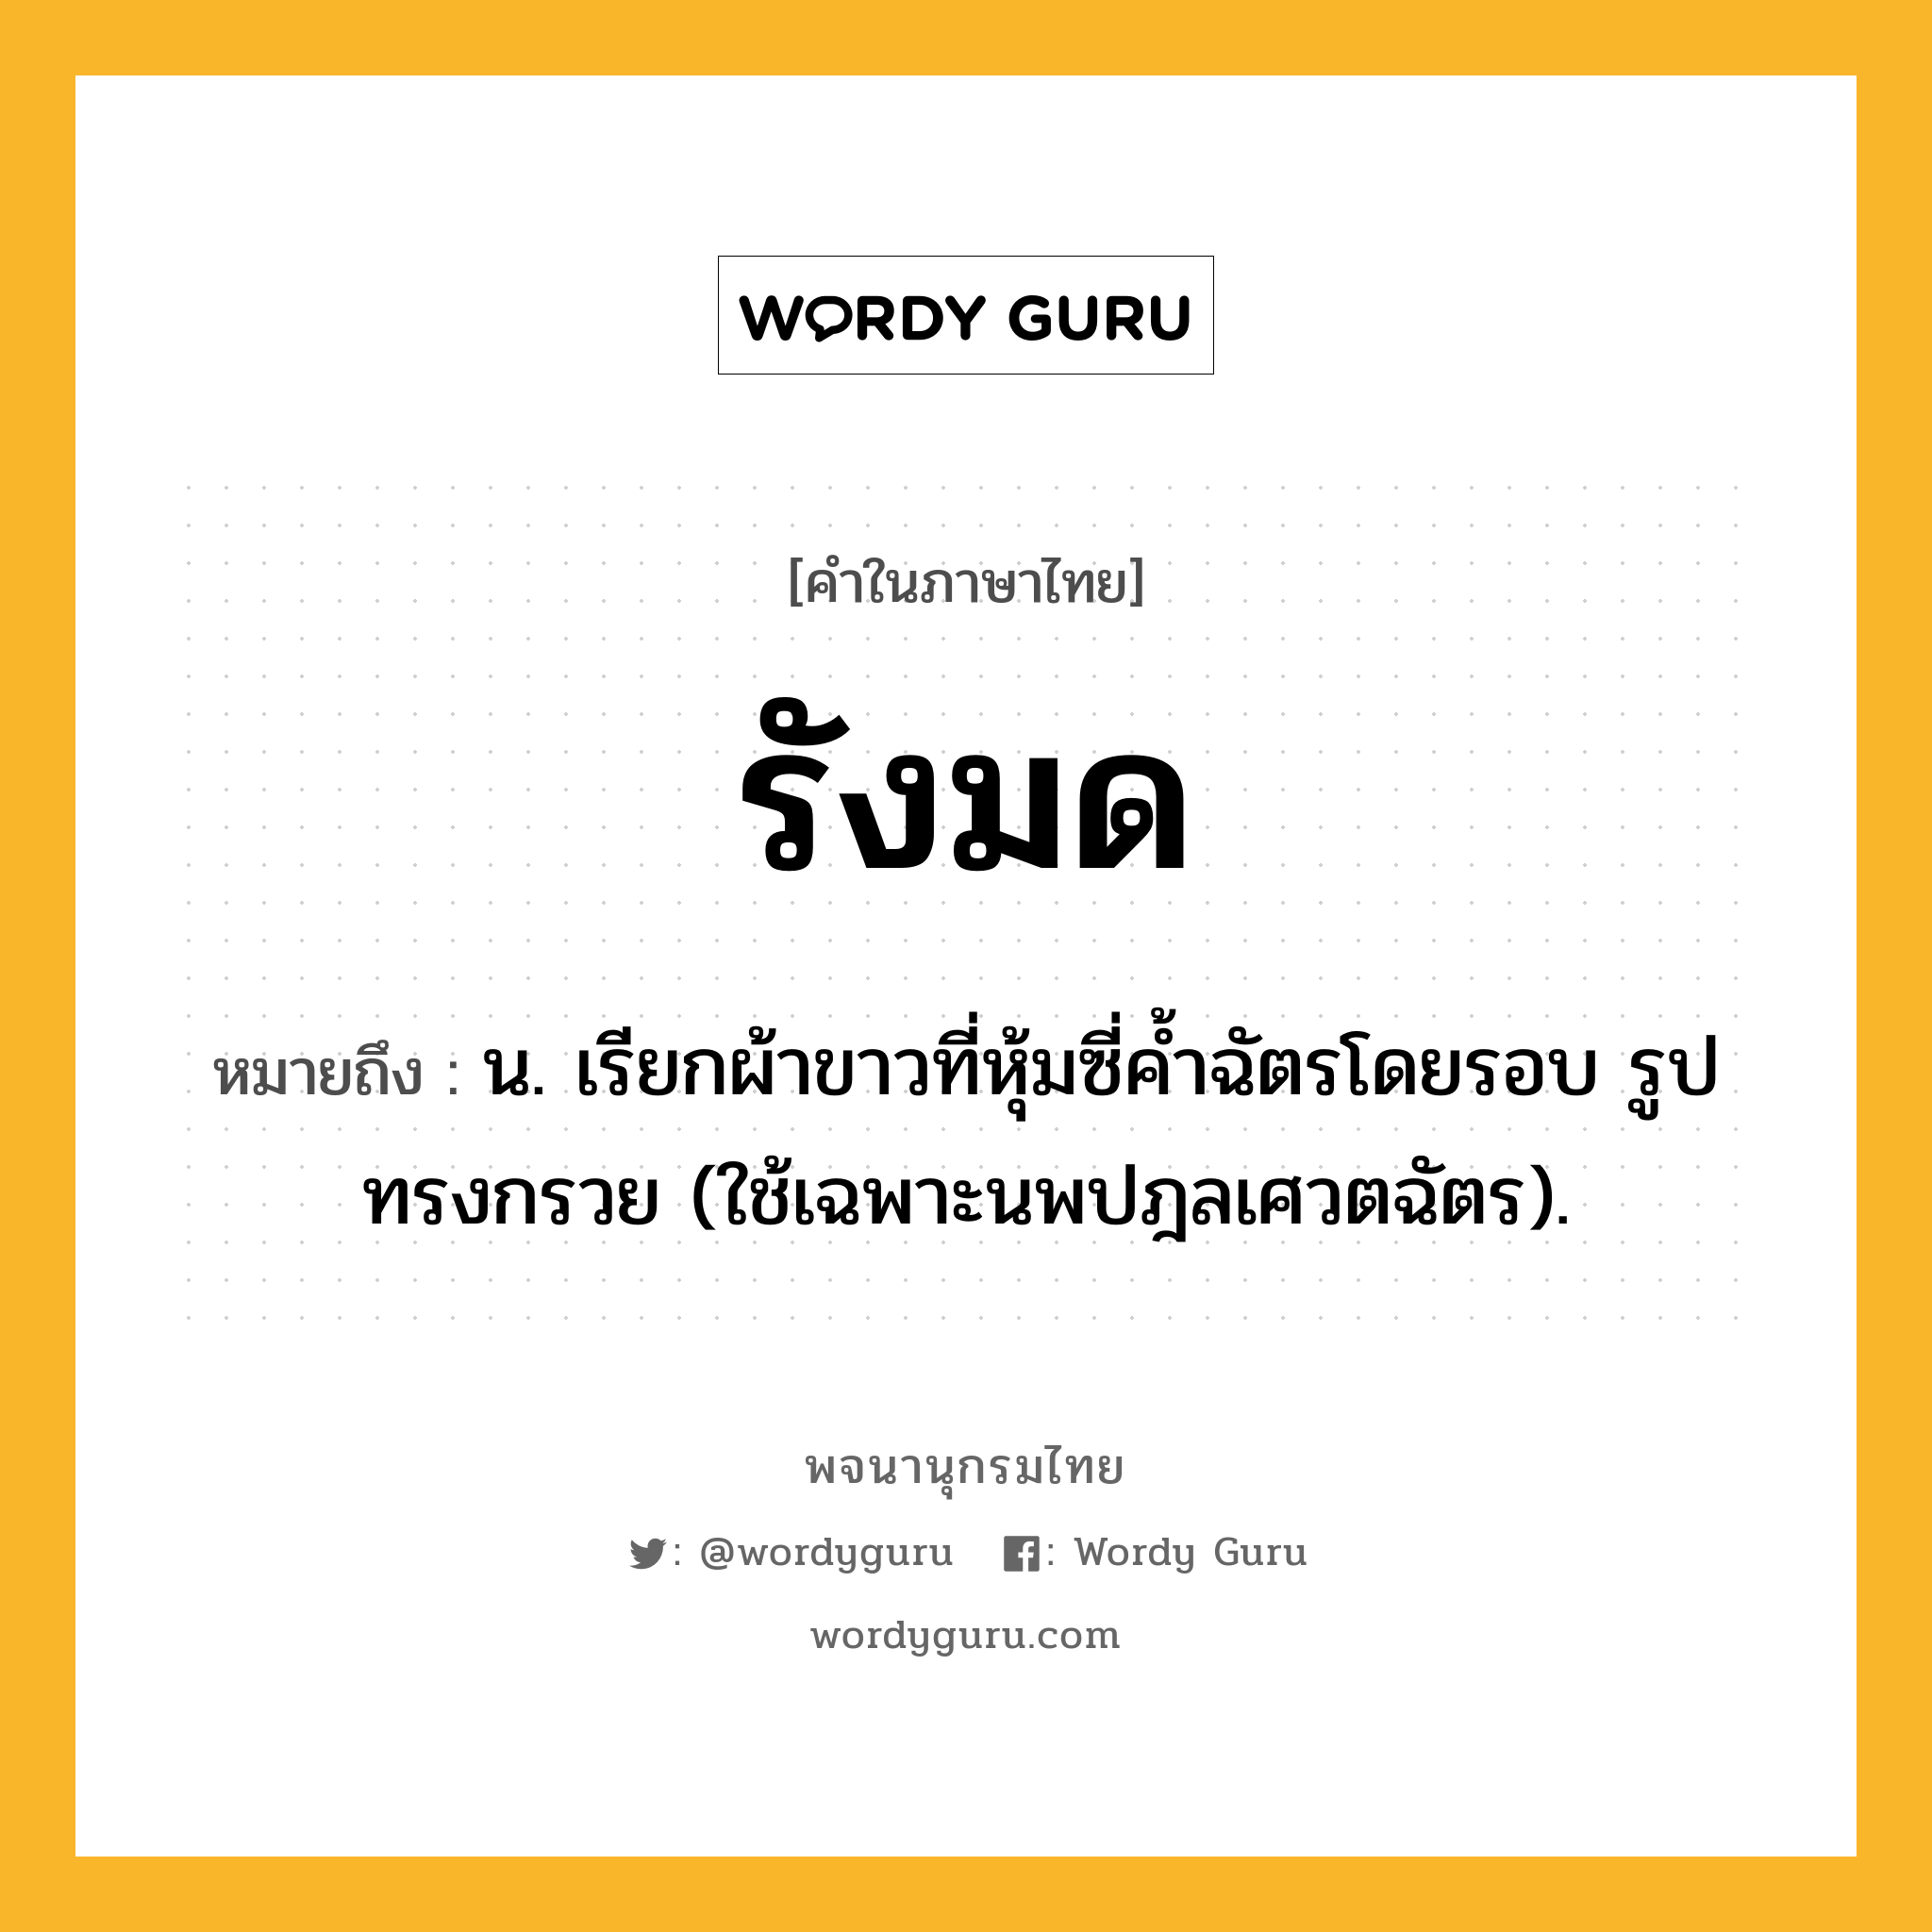 รังมด ความหมาย หมายถึงอะไร?, คำในภาษาไทย รังมด หมายถึง น. เรียกผ้าขาวที่หุ้มซี่คํ้าฉัตรโดยรอบ รูปทรงกรวย (ใช้เฉพาะนพปฎลเศวตฉัตร).